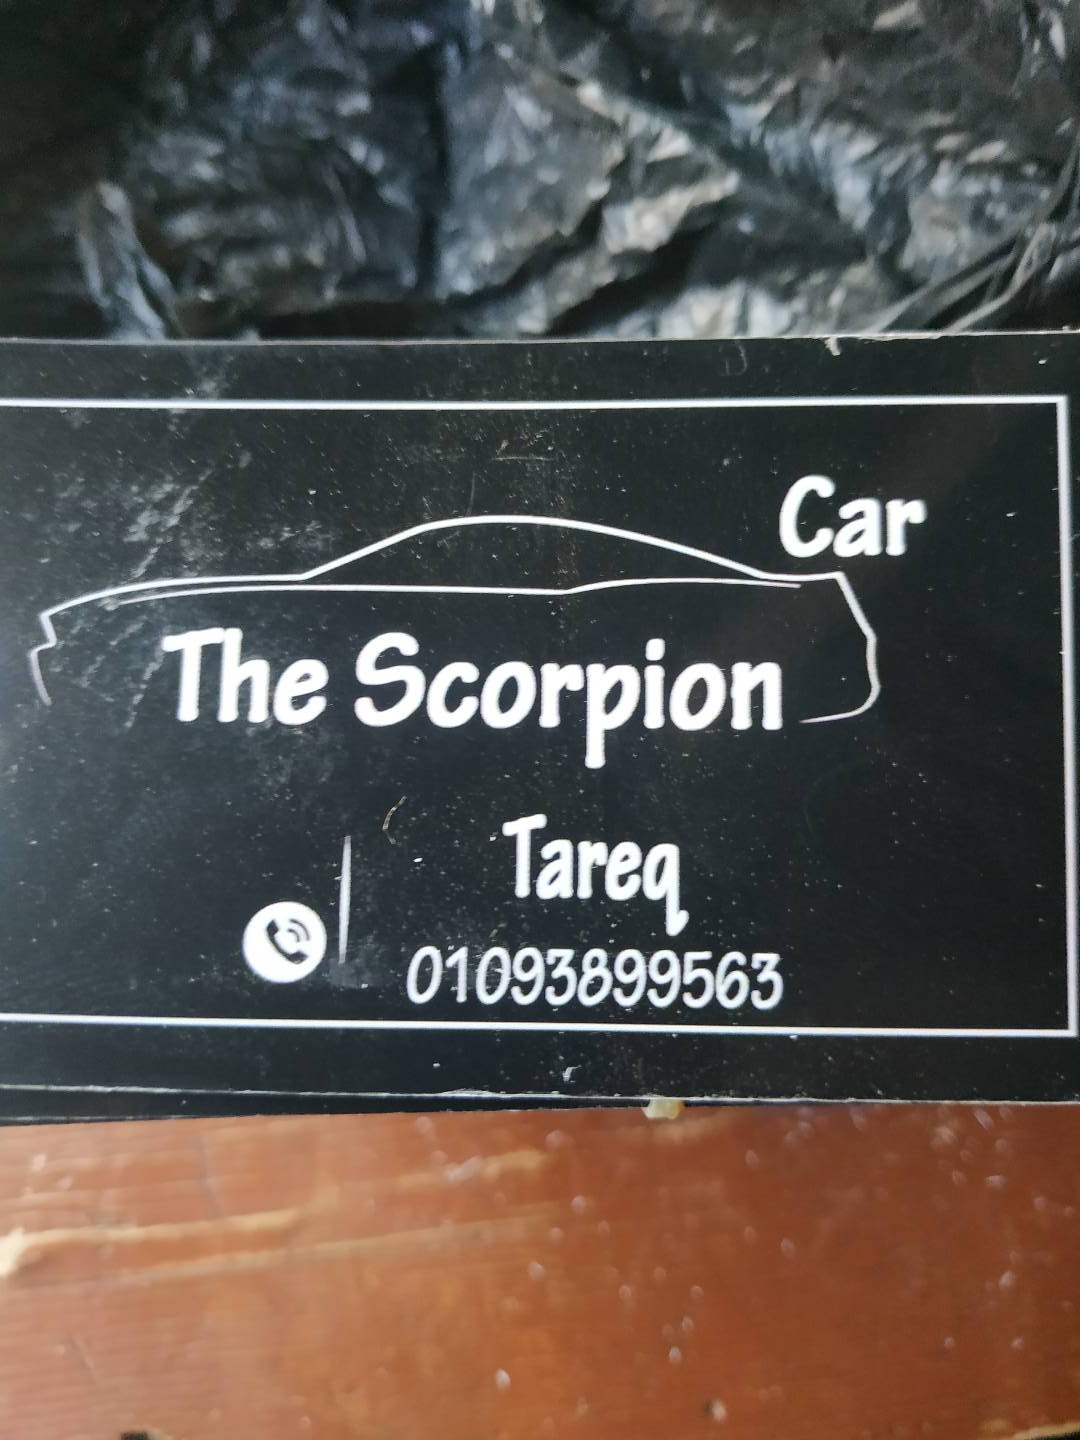 رحلات سفر طلبات خاصه (scorpion car)